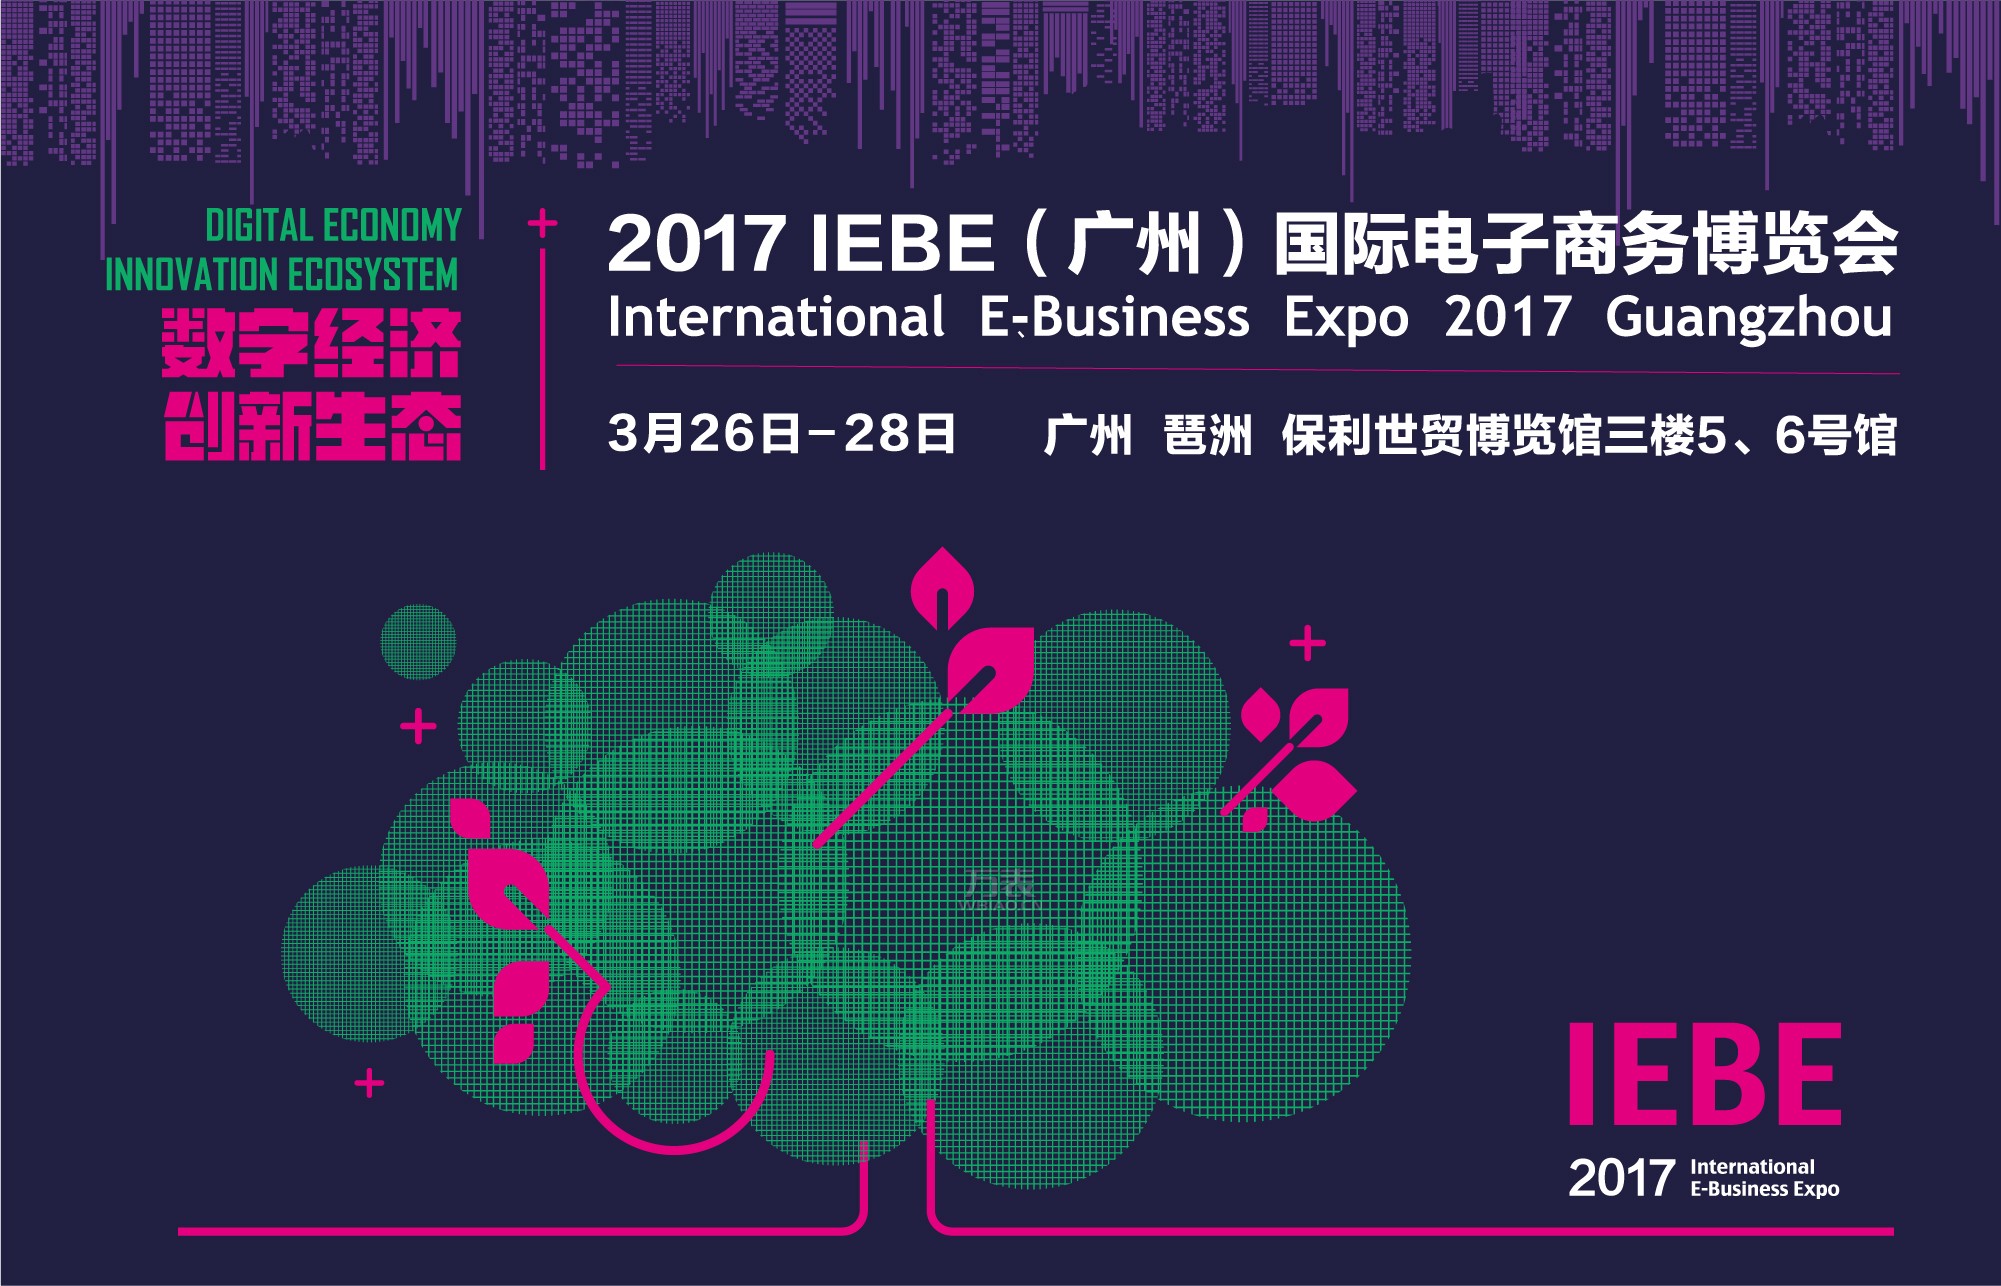 大咖云集 亮点纷呈 2017IEBE国际电商展3月26-28日在广州举行